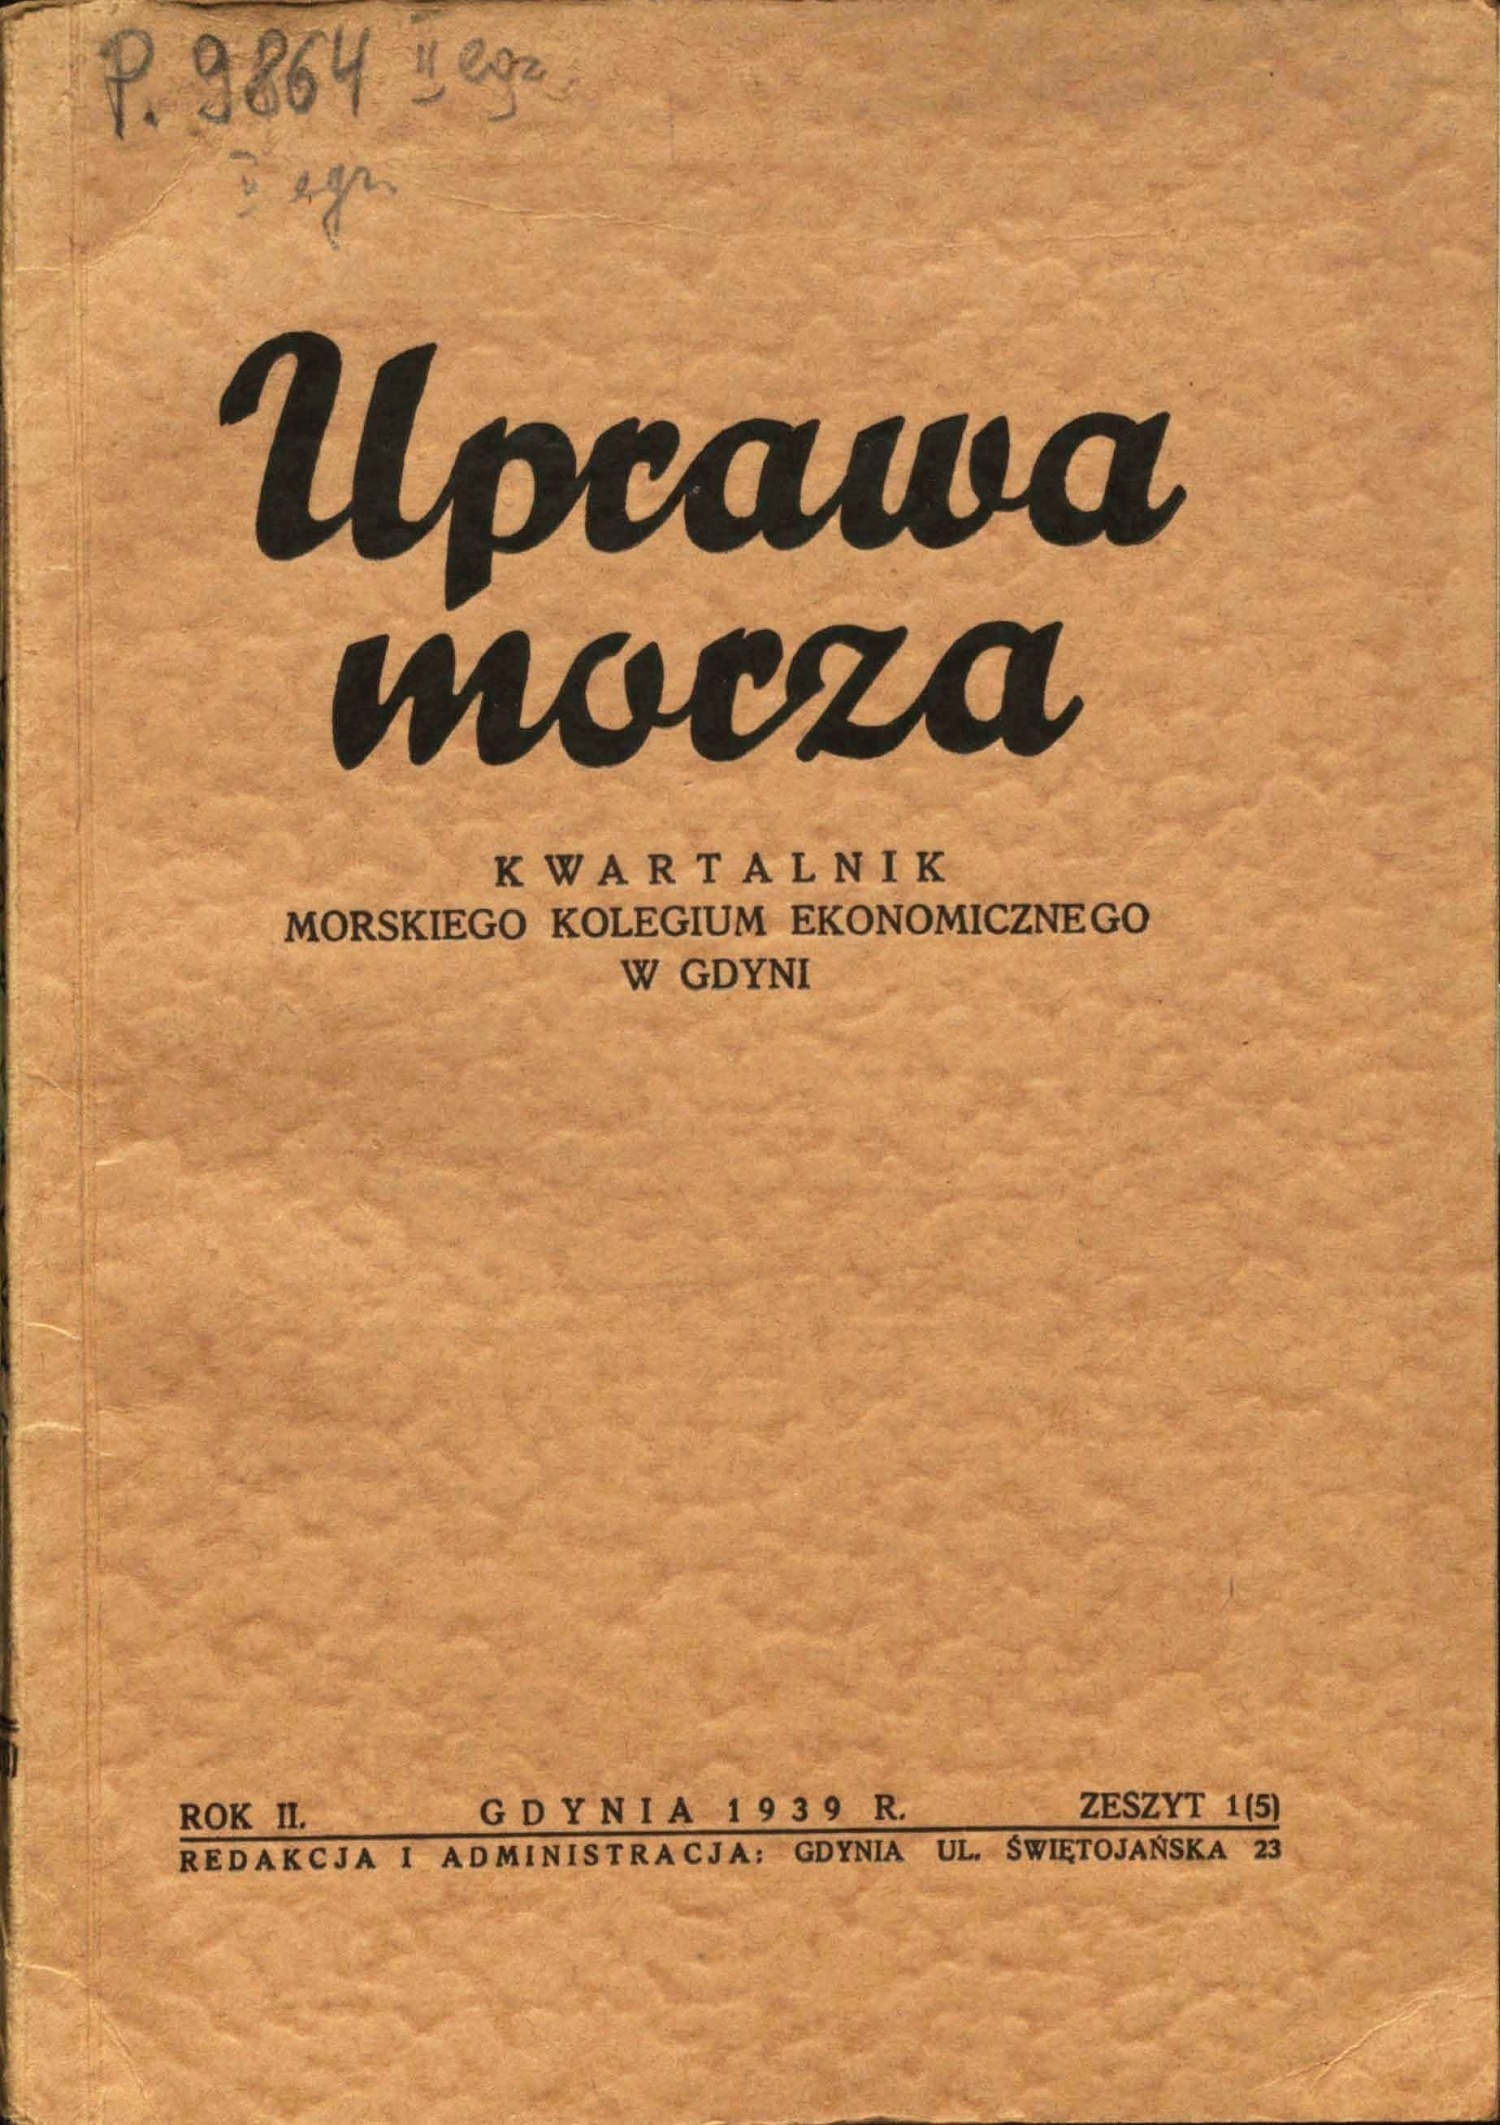 Okładka czasopisma „Uprawa Morza” z roku 1939